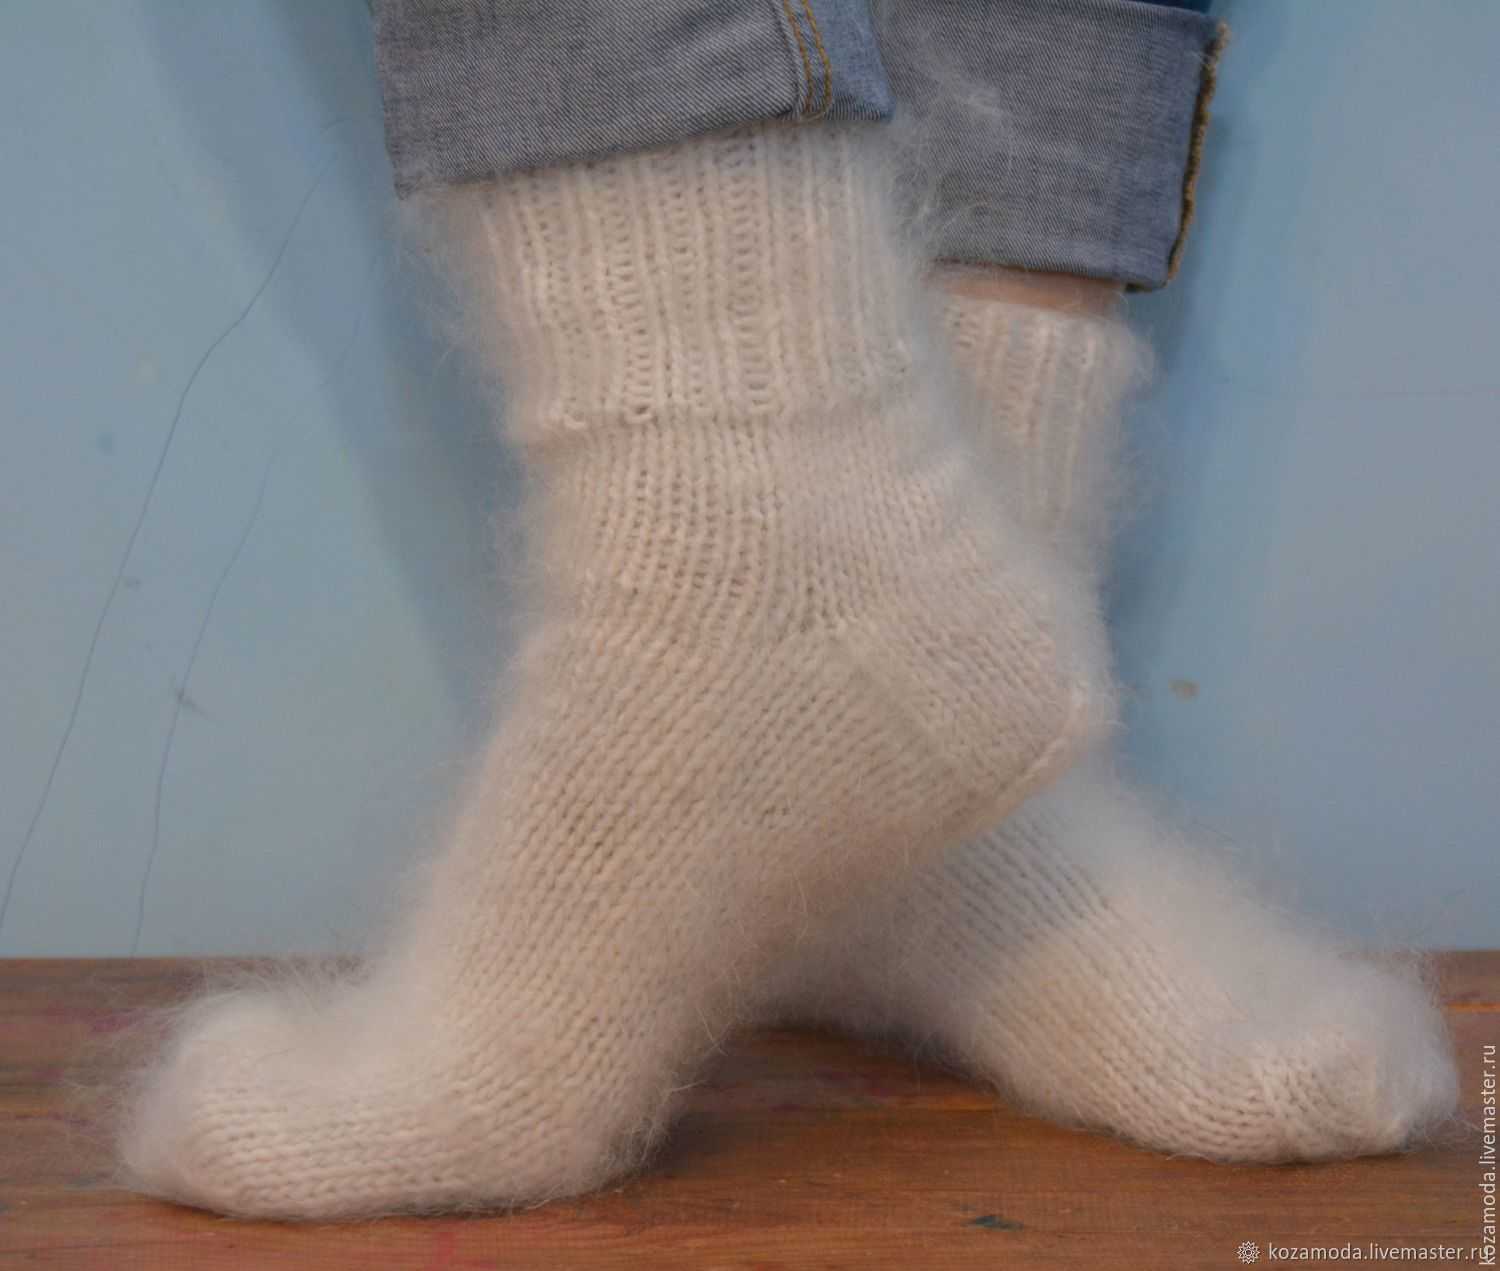 Как стирать носки в домашних условиях: как правильно в стиральной машине, от грязи и черной подошвы, шерстяные, цветные, в мешке для стирки?